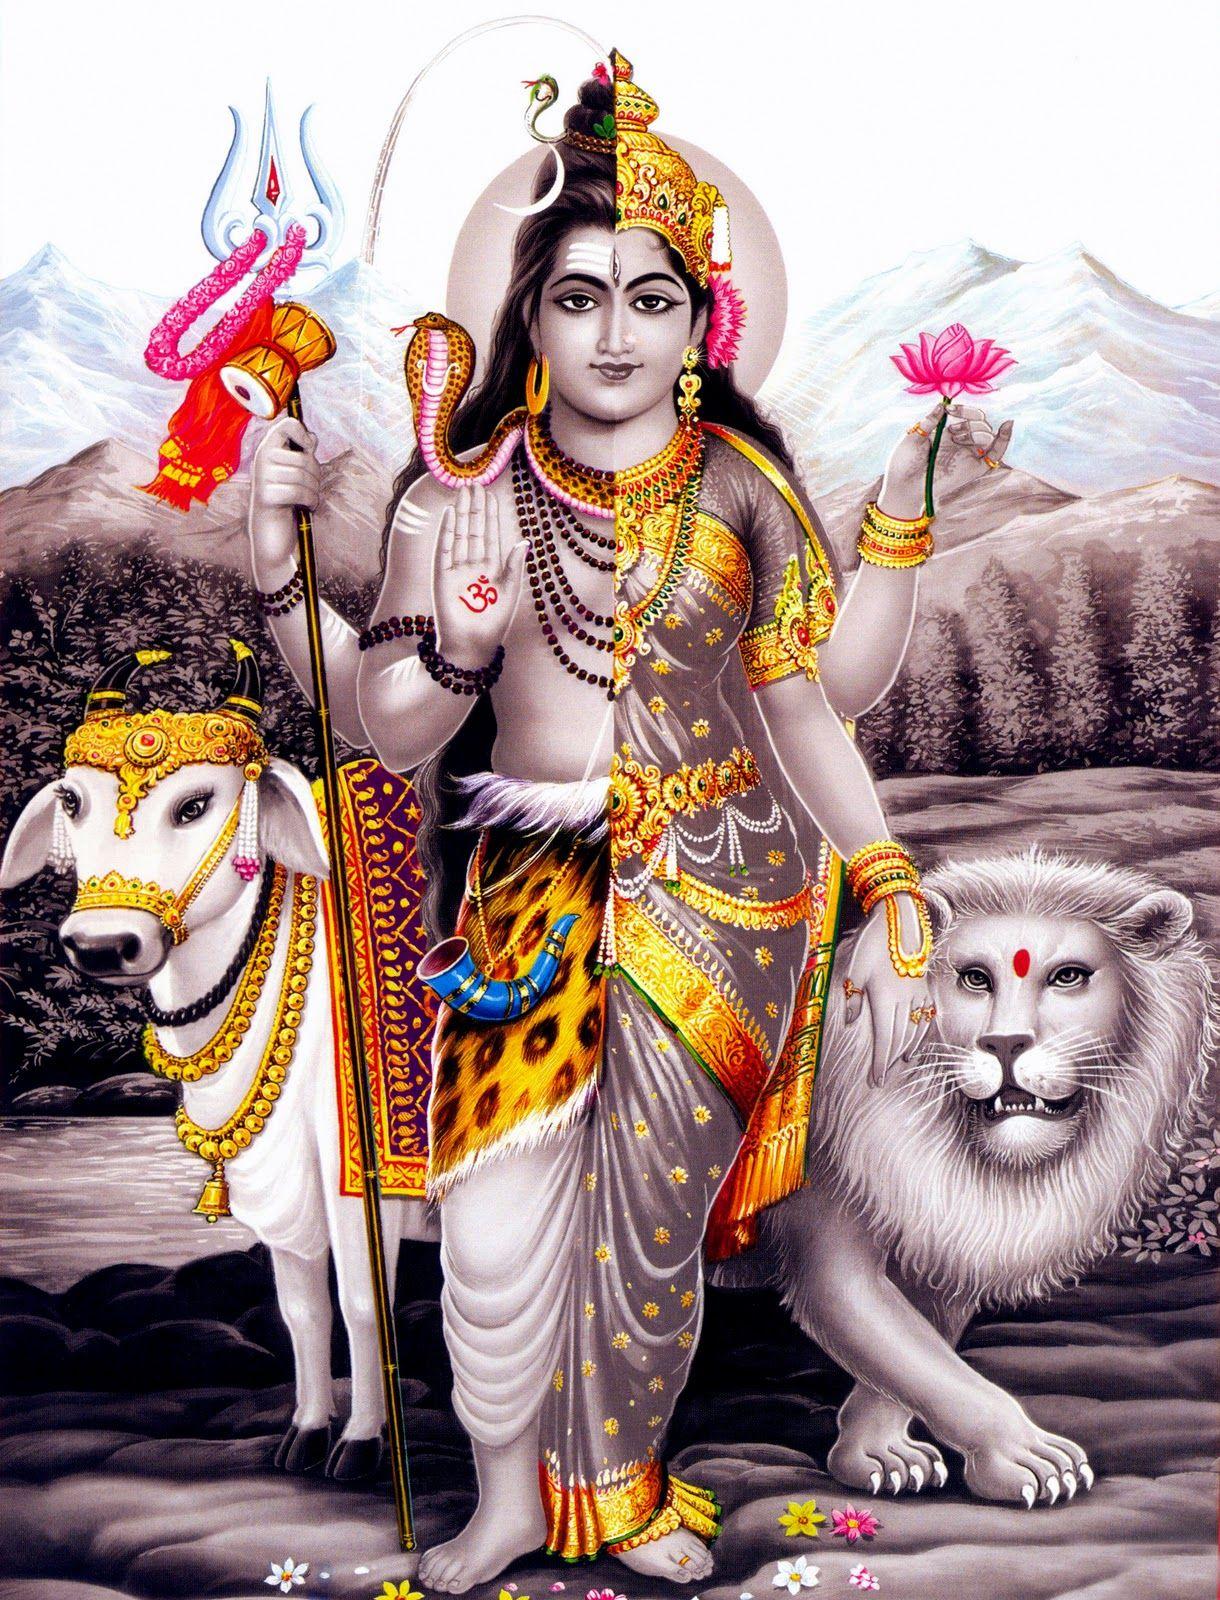 Hình ảnh và hình nền độ nét cao 1220x1600: Hình ảnh shiva và parvathi, Hình ảnh shiva paravathi, Hình nền của shiva parvati, Hình ảnh shiva shakti, Hình ảnh shiva parvati, Hình ảnh shiva parvati, Hình nền shiv ganesh, Hình ảnh chúa tể shiva parvati